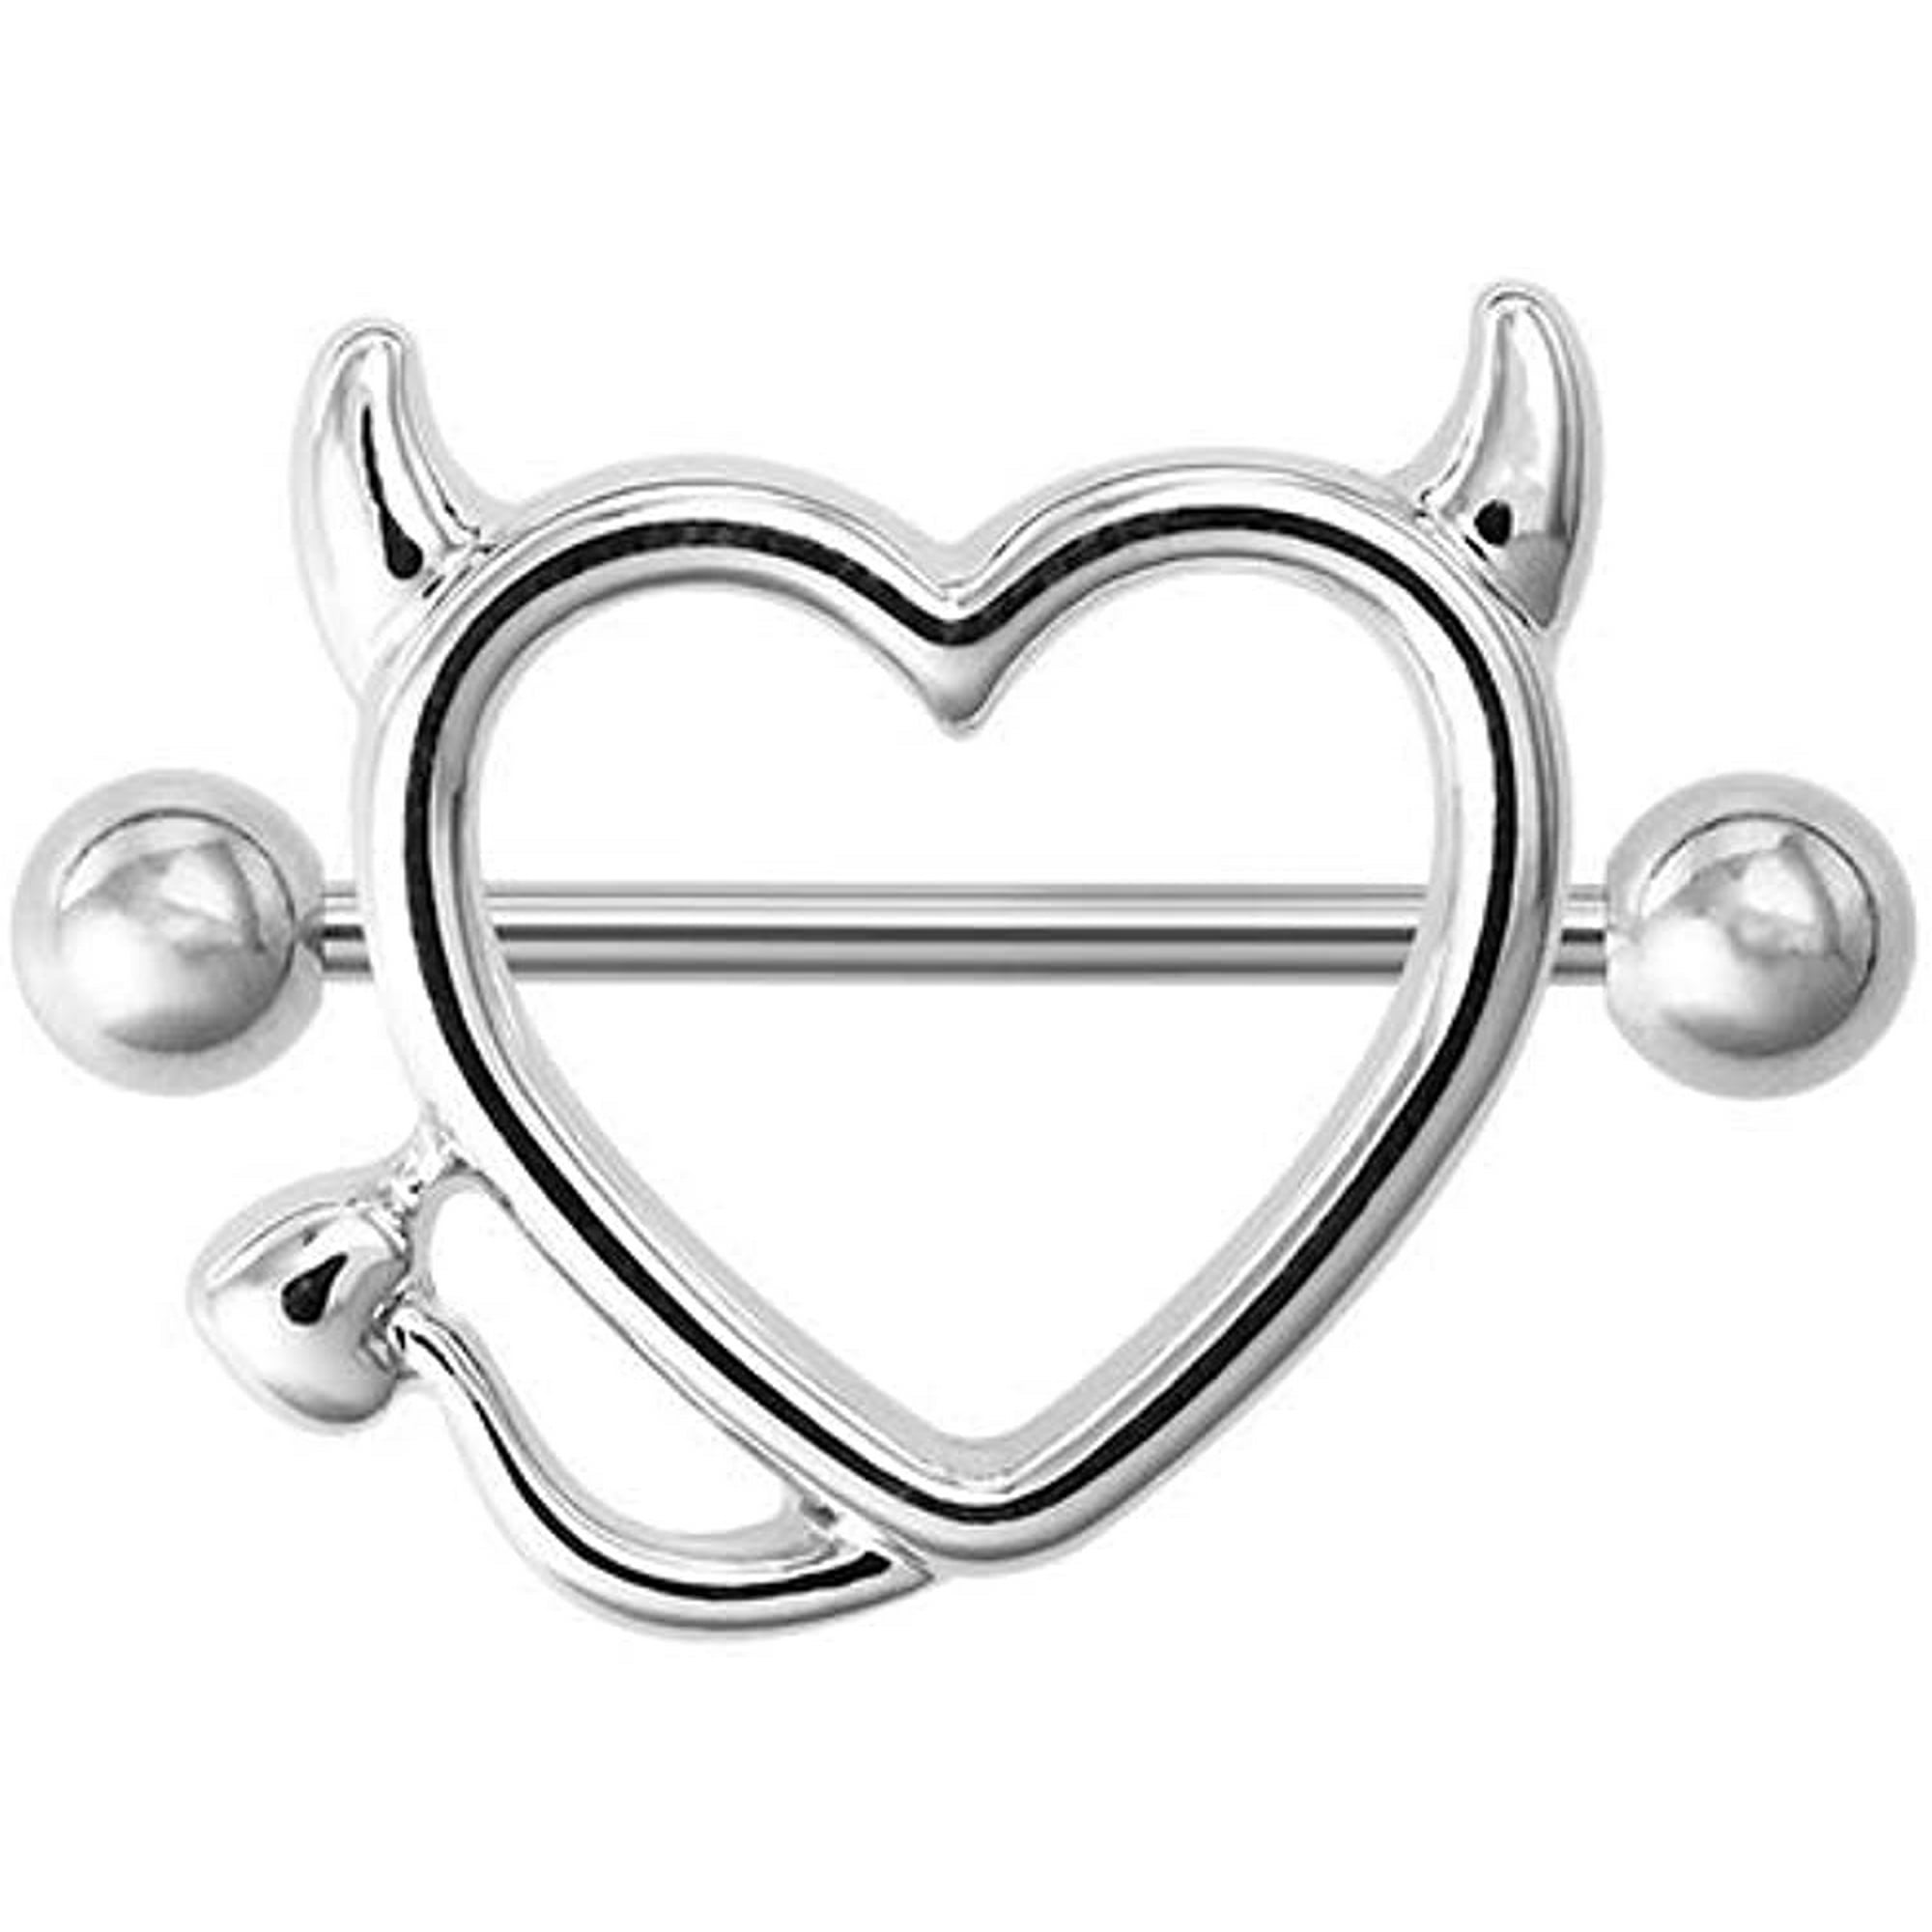 Pair 14g Stainless Steel Breast Piercing Jewelry Heart Nipple Piercing 